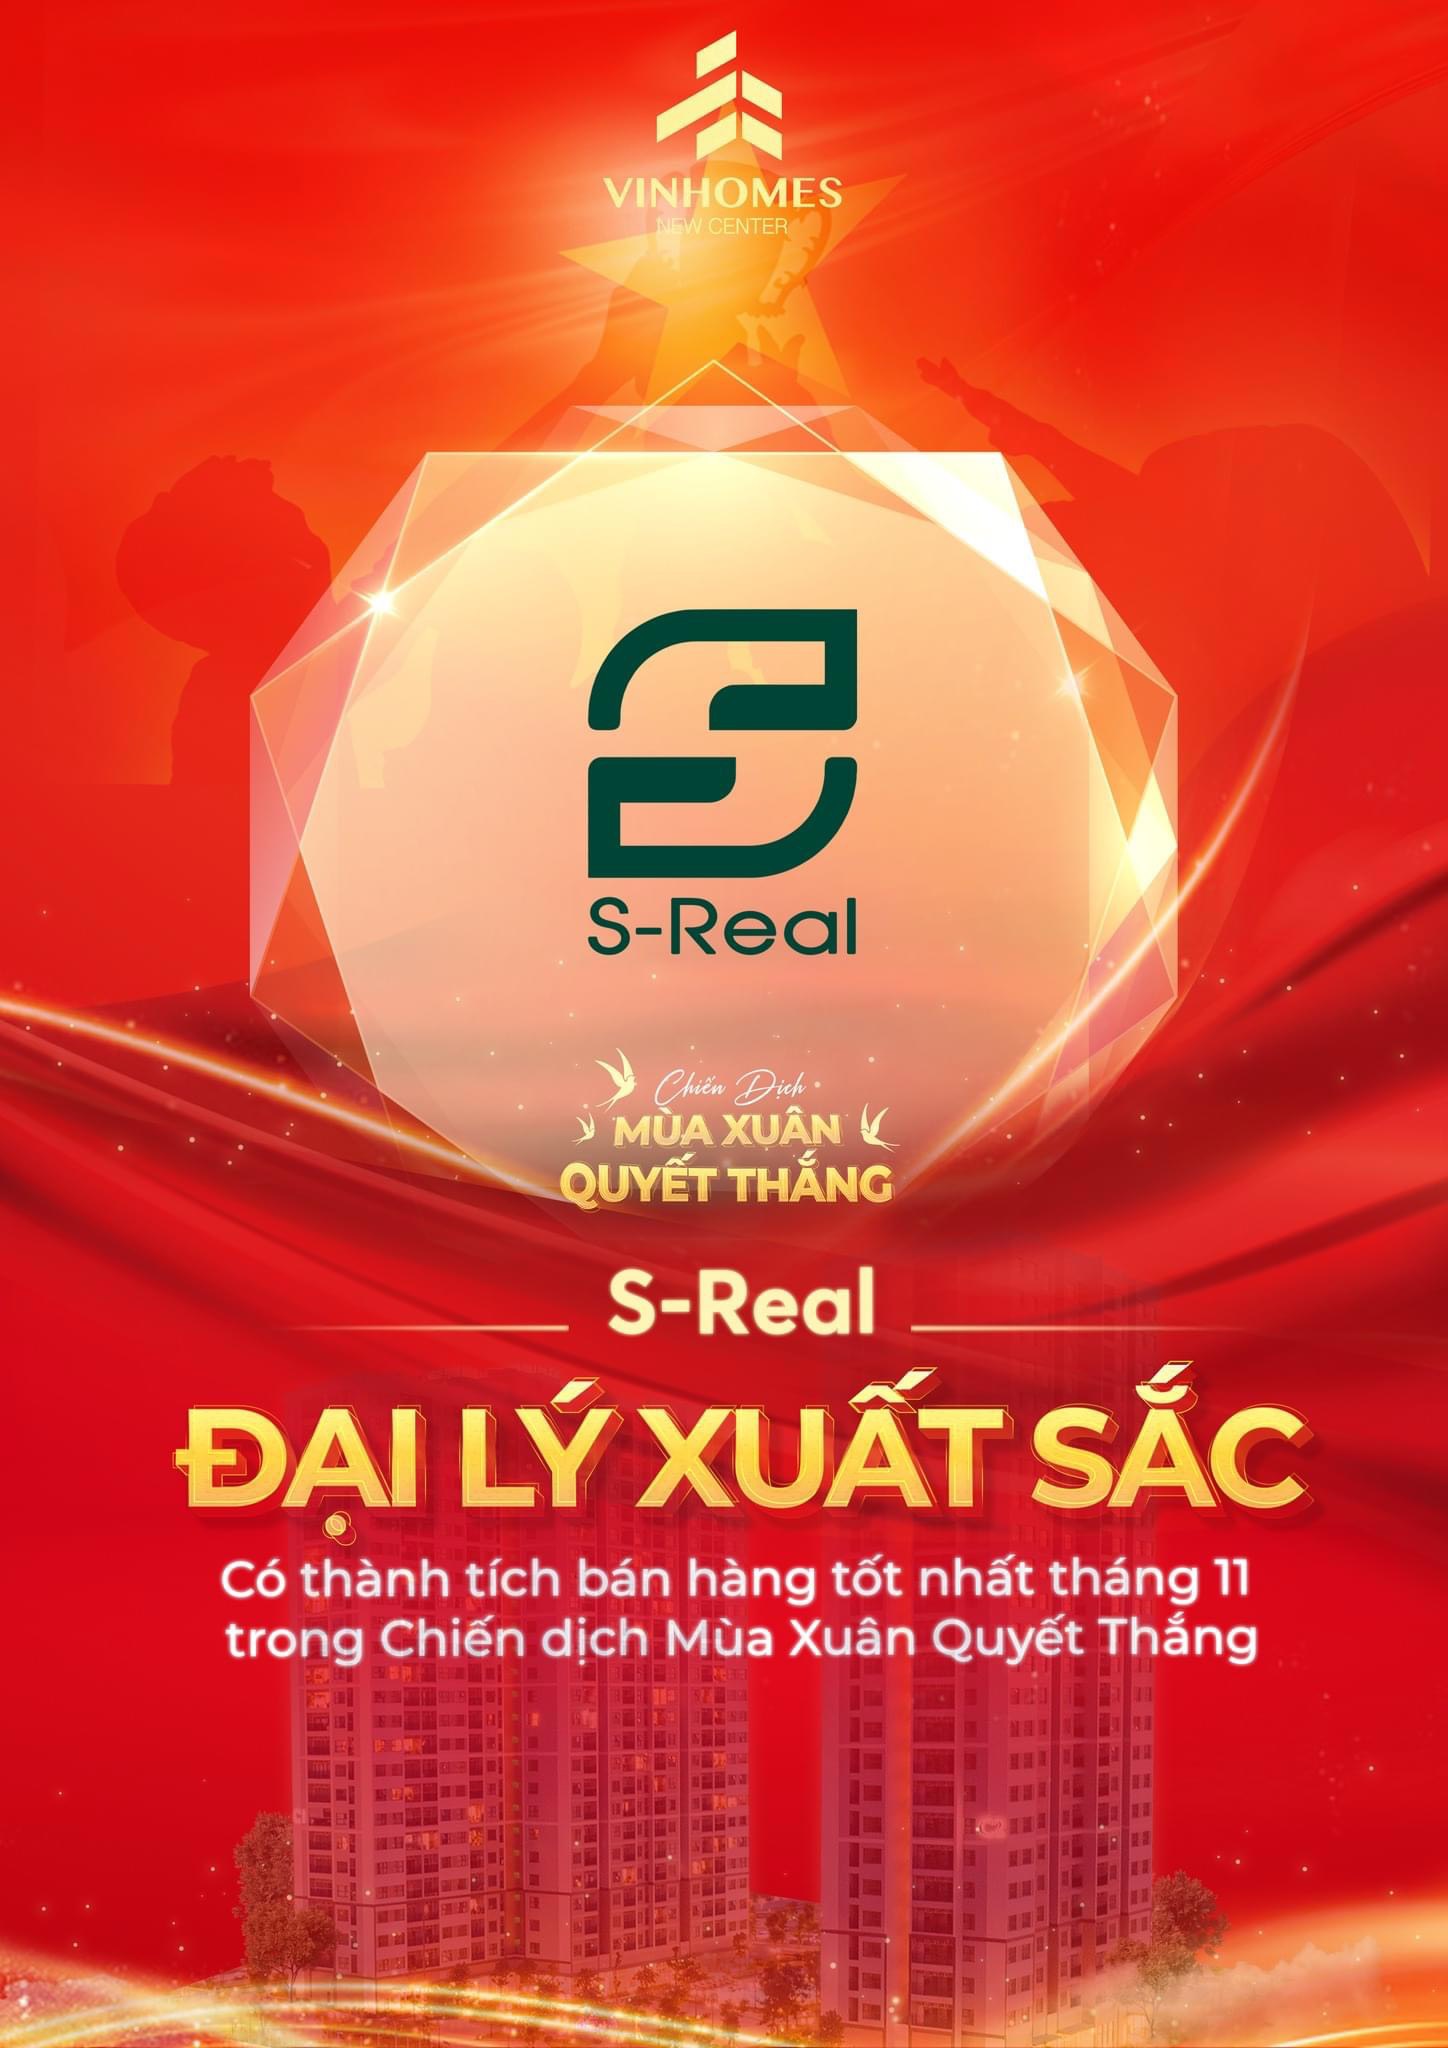 S-Real Việt Nam và danh hiệu Đại lý bán hàng xuất sắc nhất dự án Vinhomes New Center